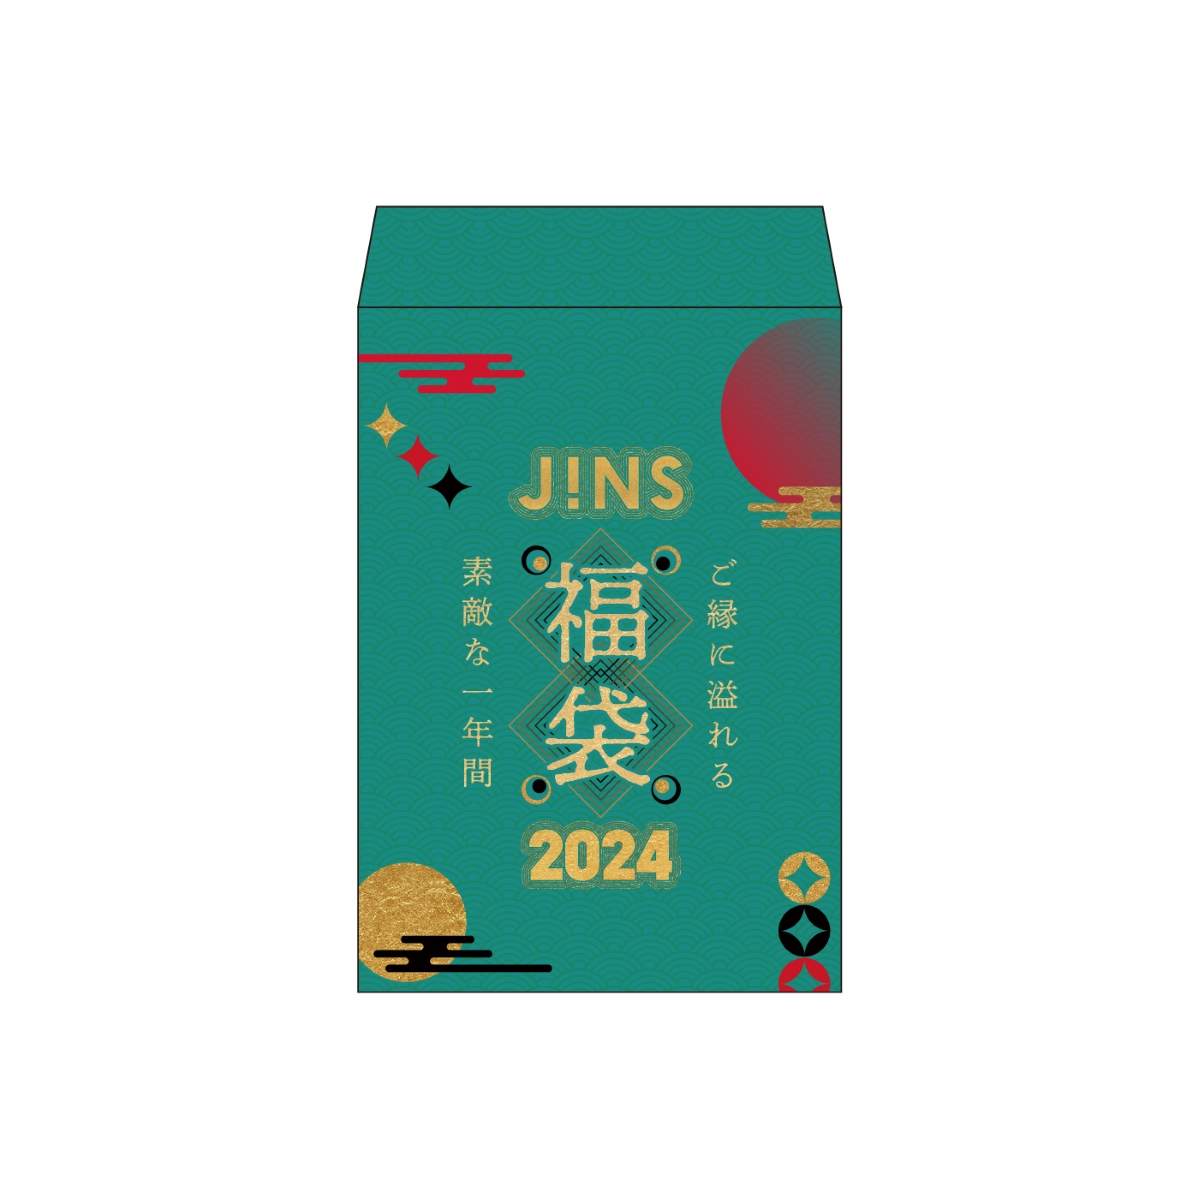 2024 JINS ジンズ メガネ 眼鏡 福袋 - ショッピング